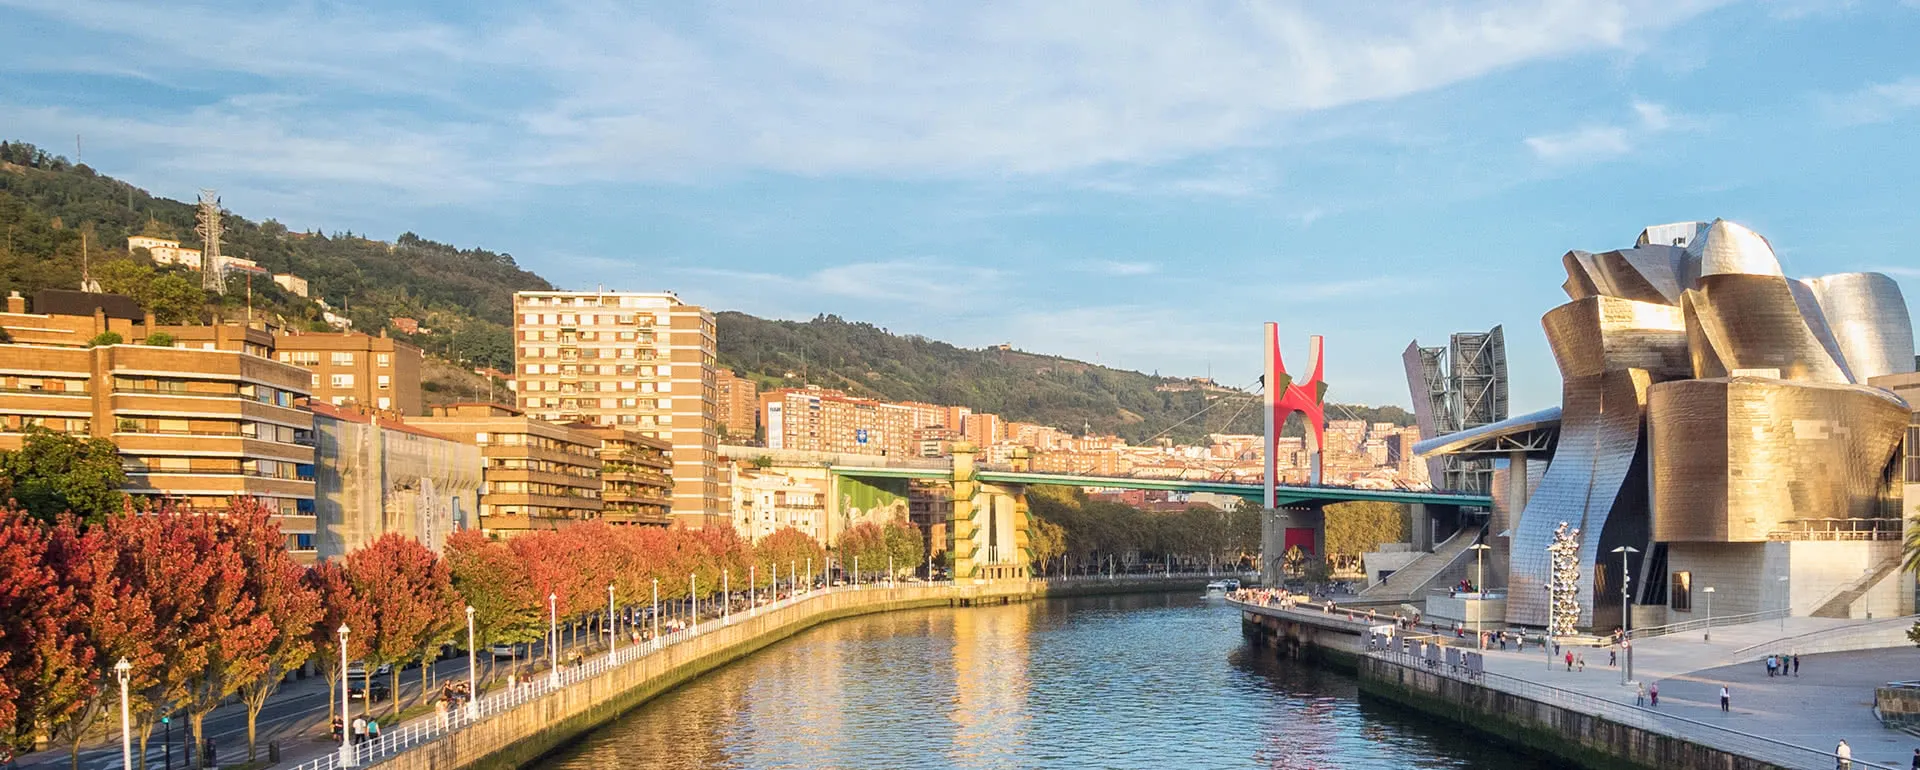 Bilbao - das Reiseziel mit Jugendherbergen